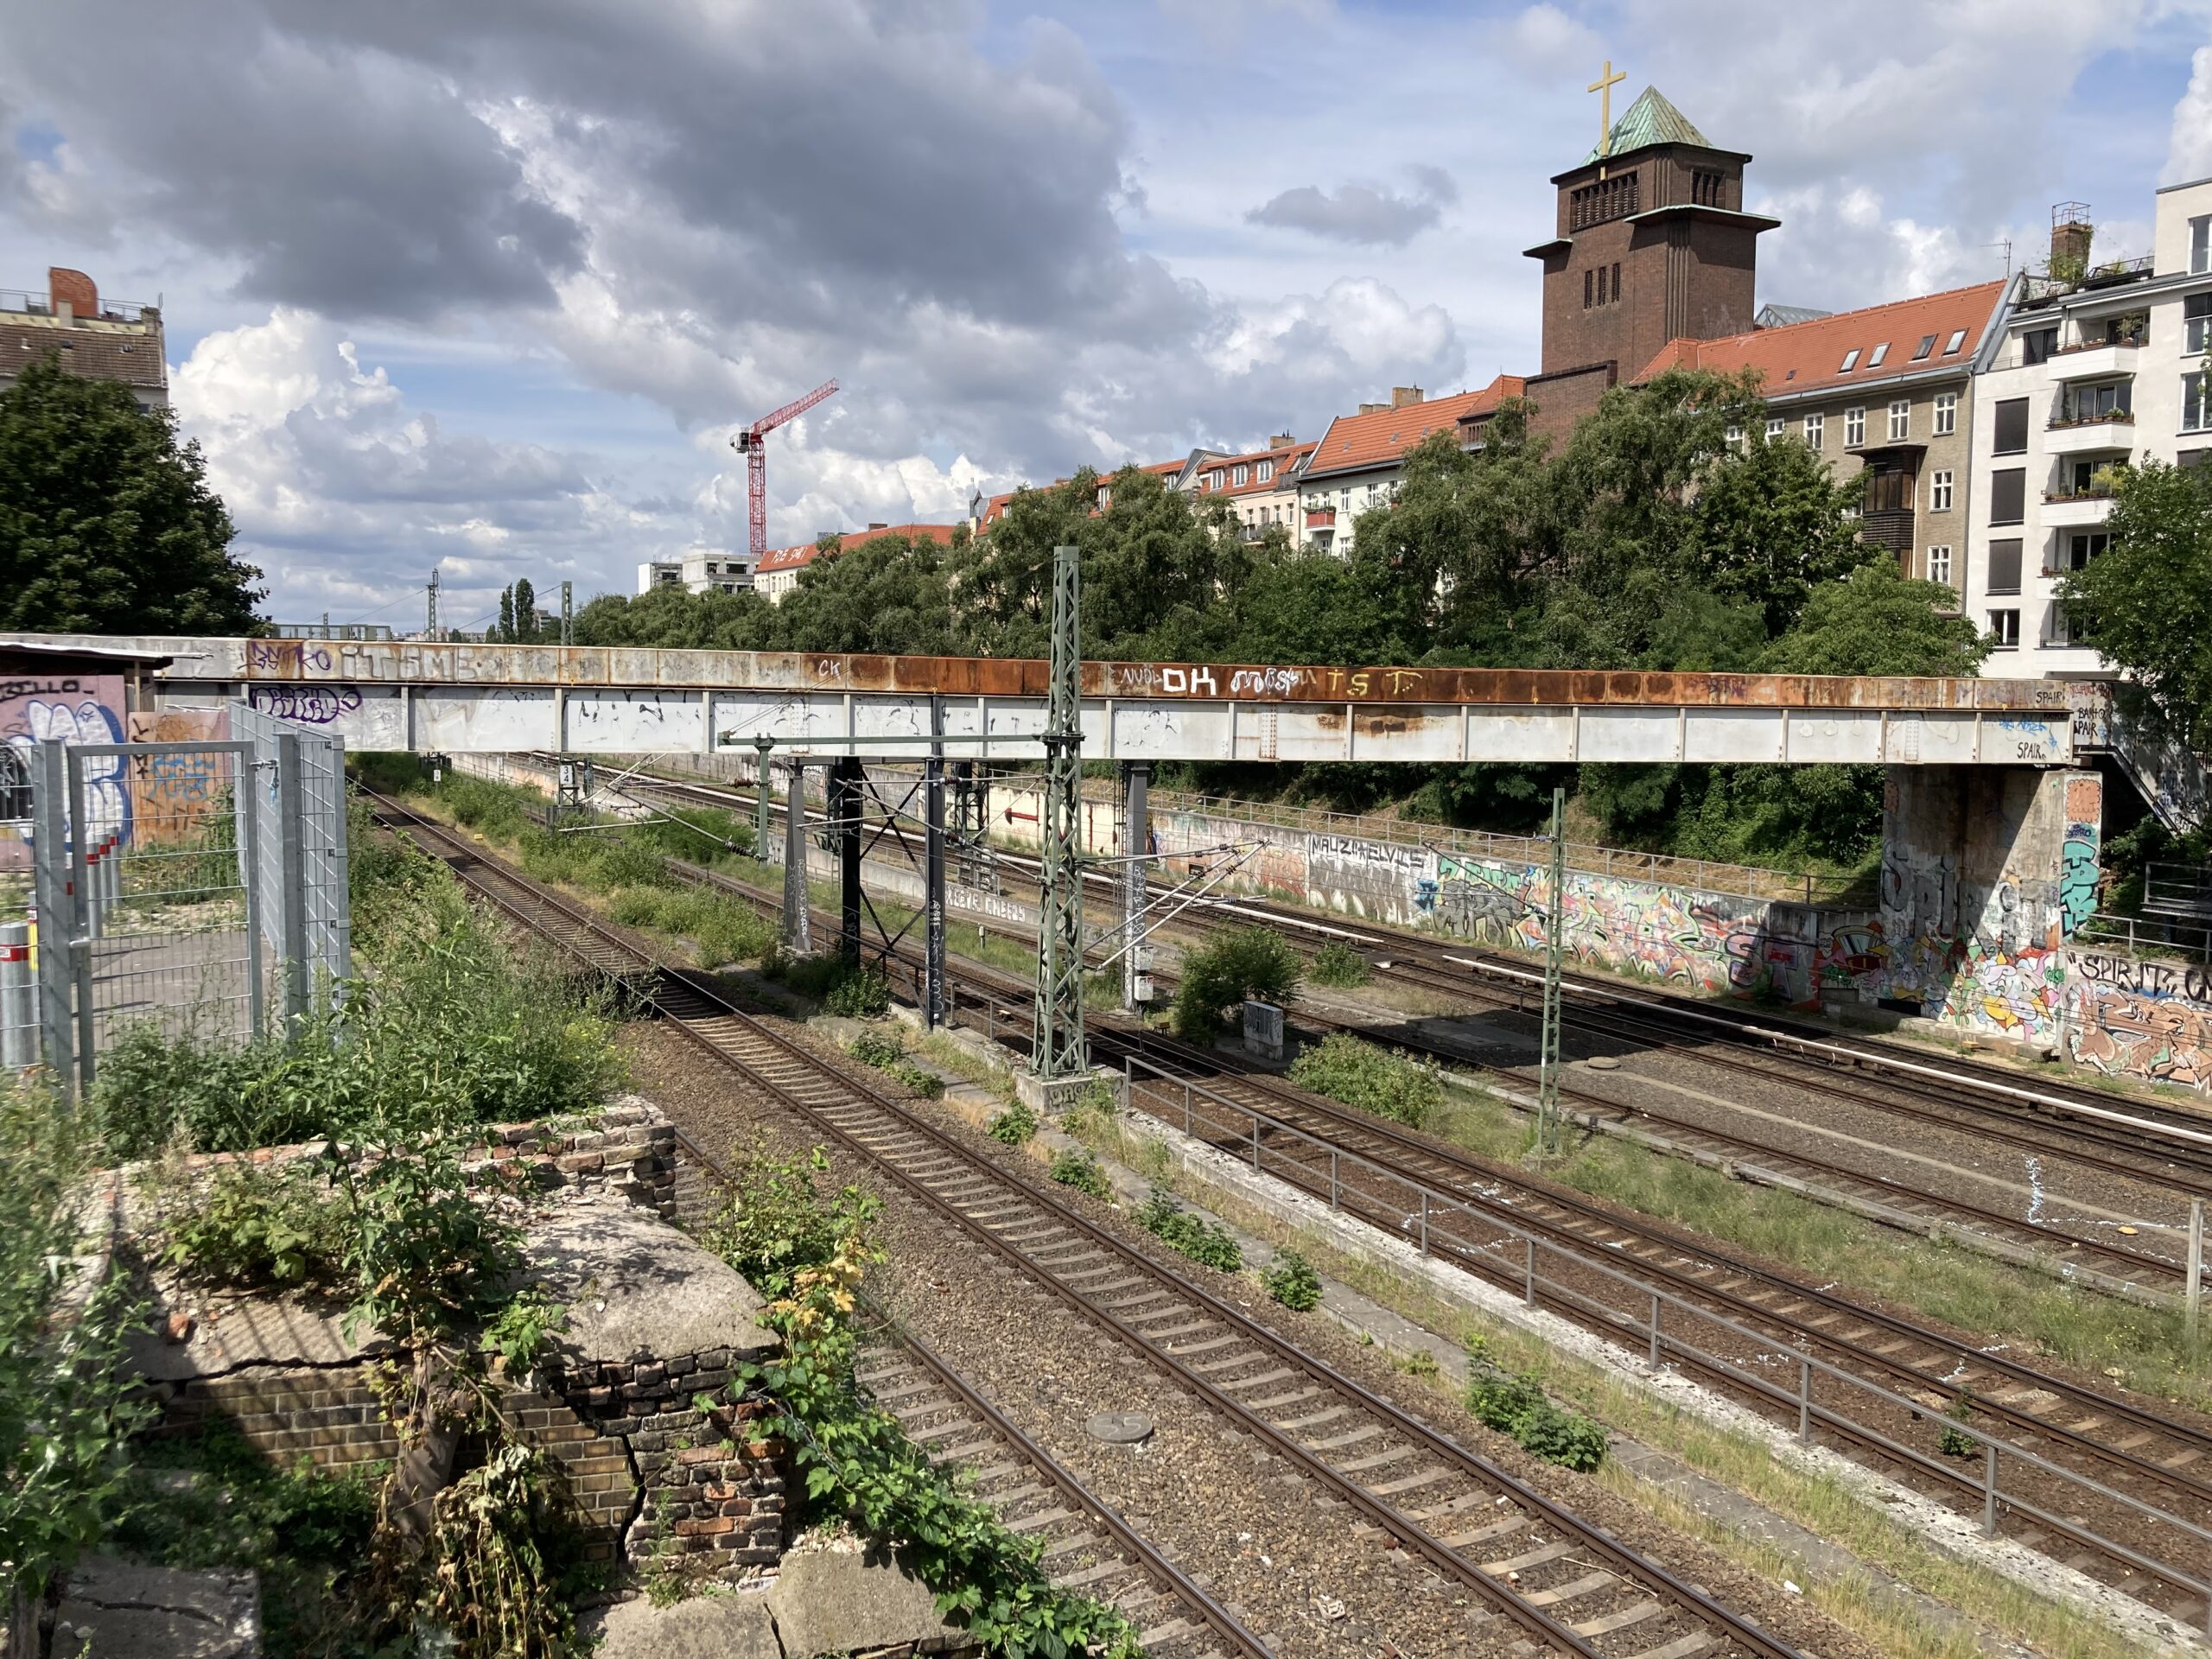 Gleise, Brücken und die Stadt. Aussichten entlang der Ringbahn, hier in Prenzlauer Berg. Foto: Jacek Slaski 